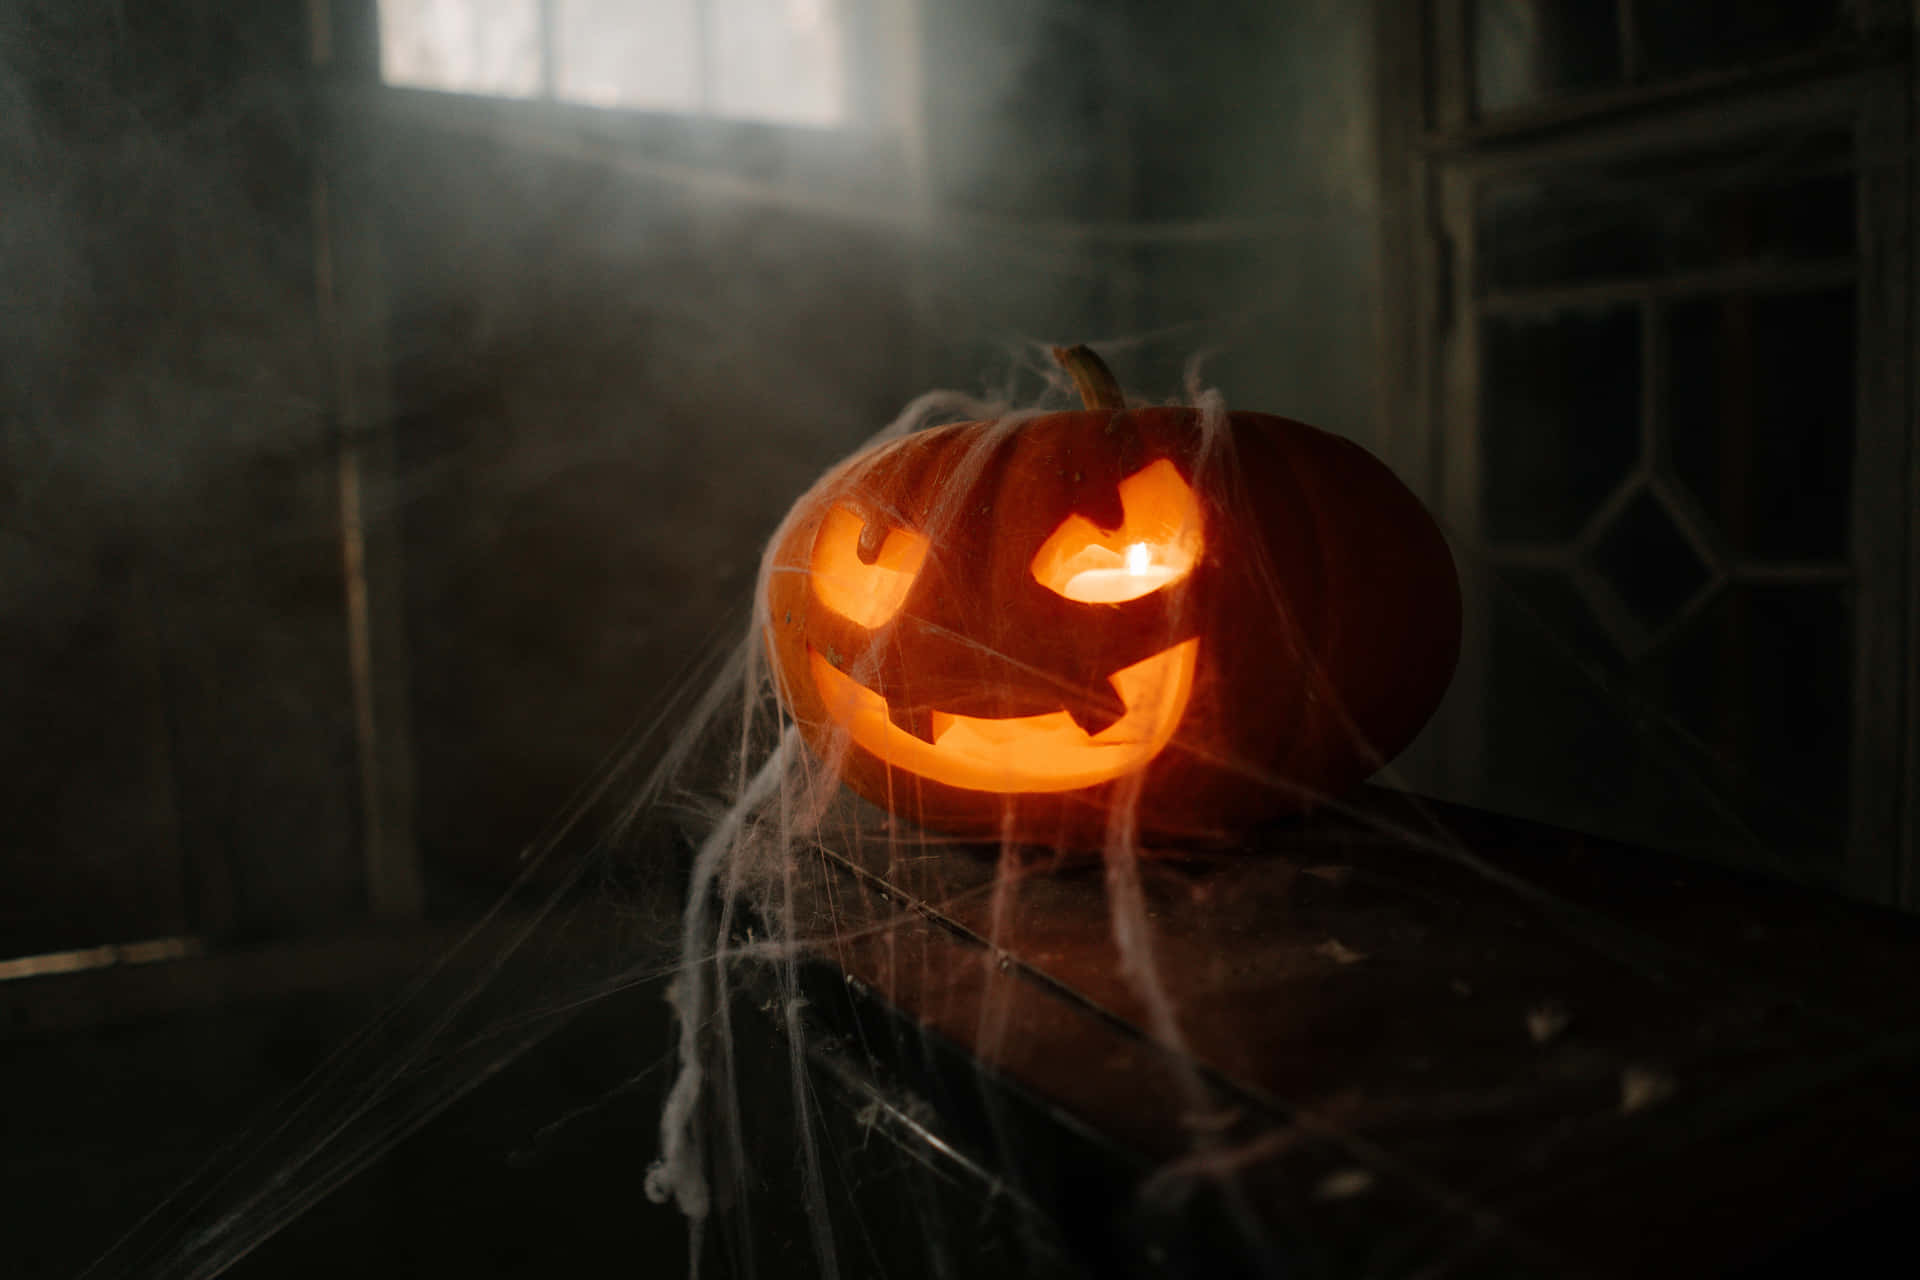 Decorazionedi Halloween In Una Foto Di Una Distesa Di Zucche.